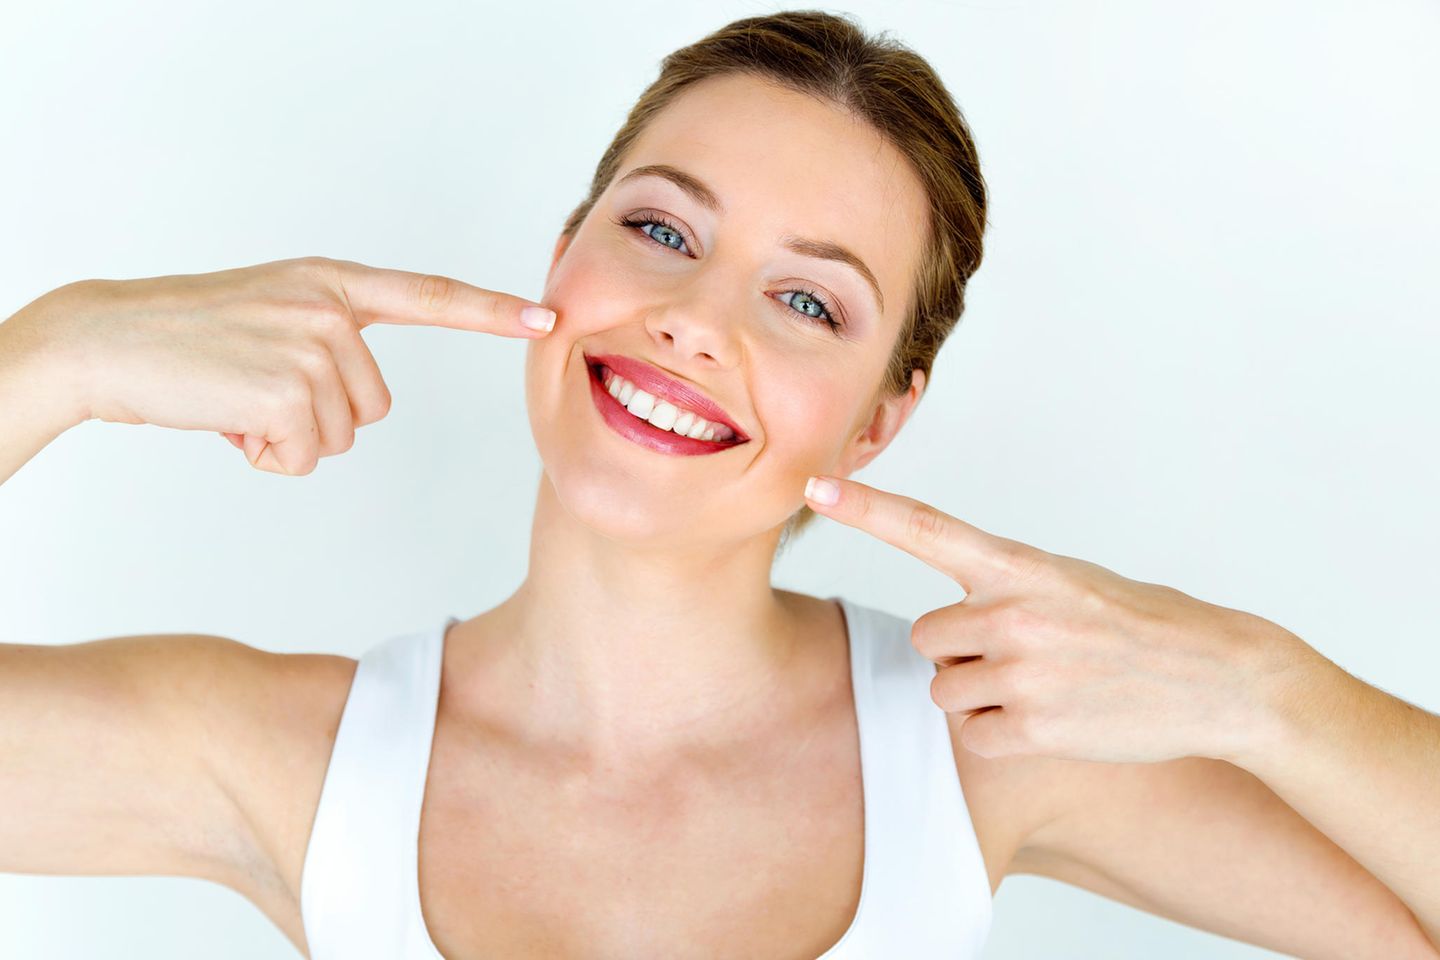 Ölziehen: Eine Frau zeigt auf ihr strahlend-weißes Lächeln